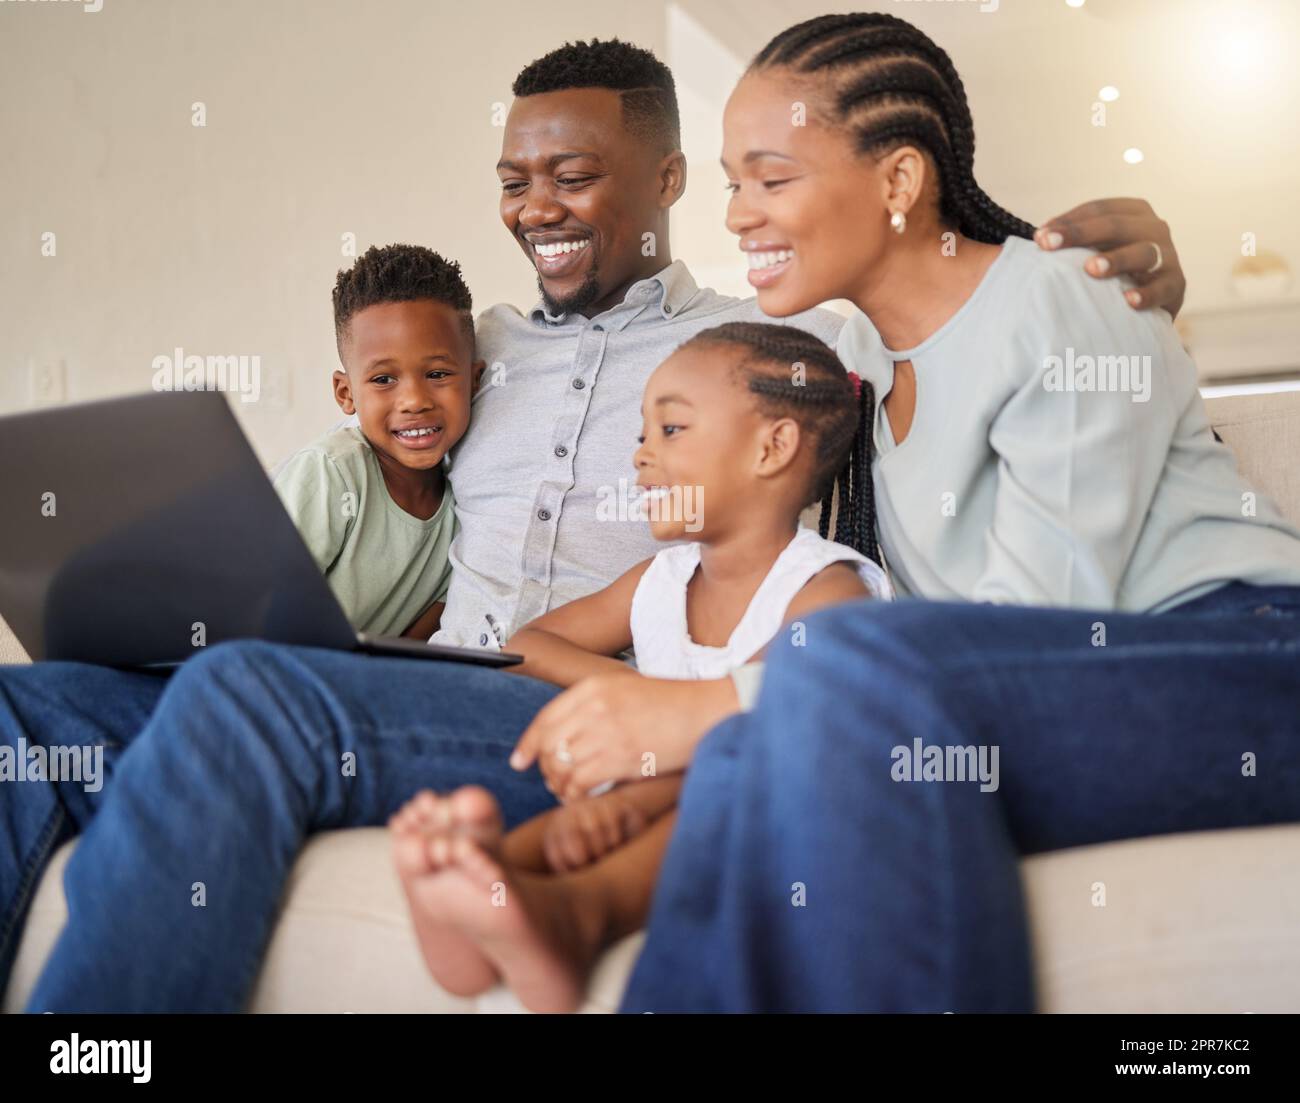 Familie ist alles, was zählt. Eine junge afrikanische Familie, die zusammen Filme auf einem Laptop sieht. Stockfoto